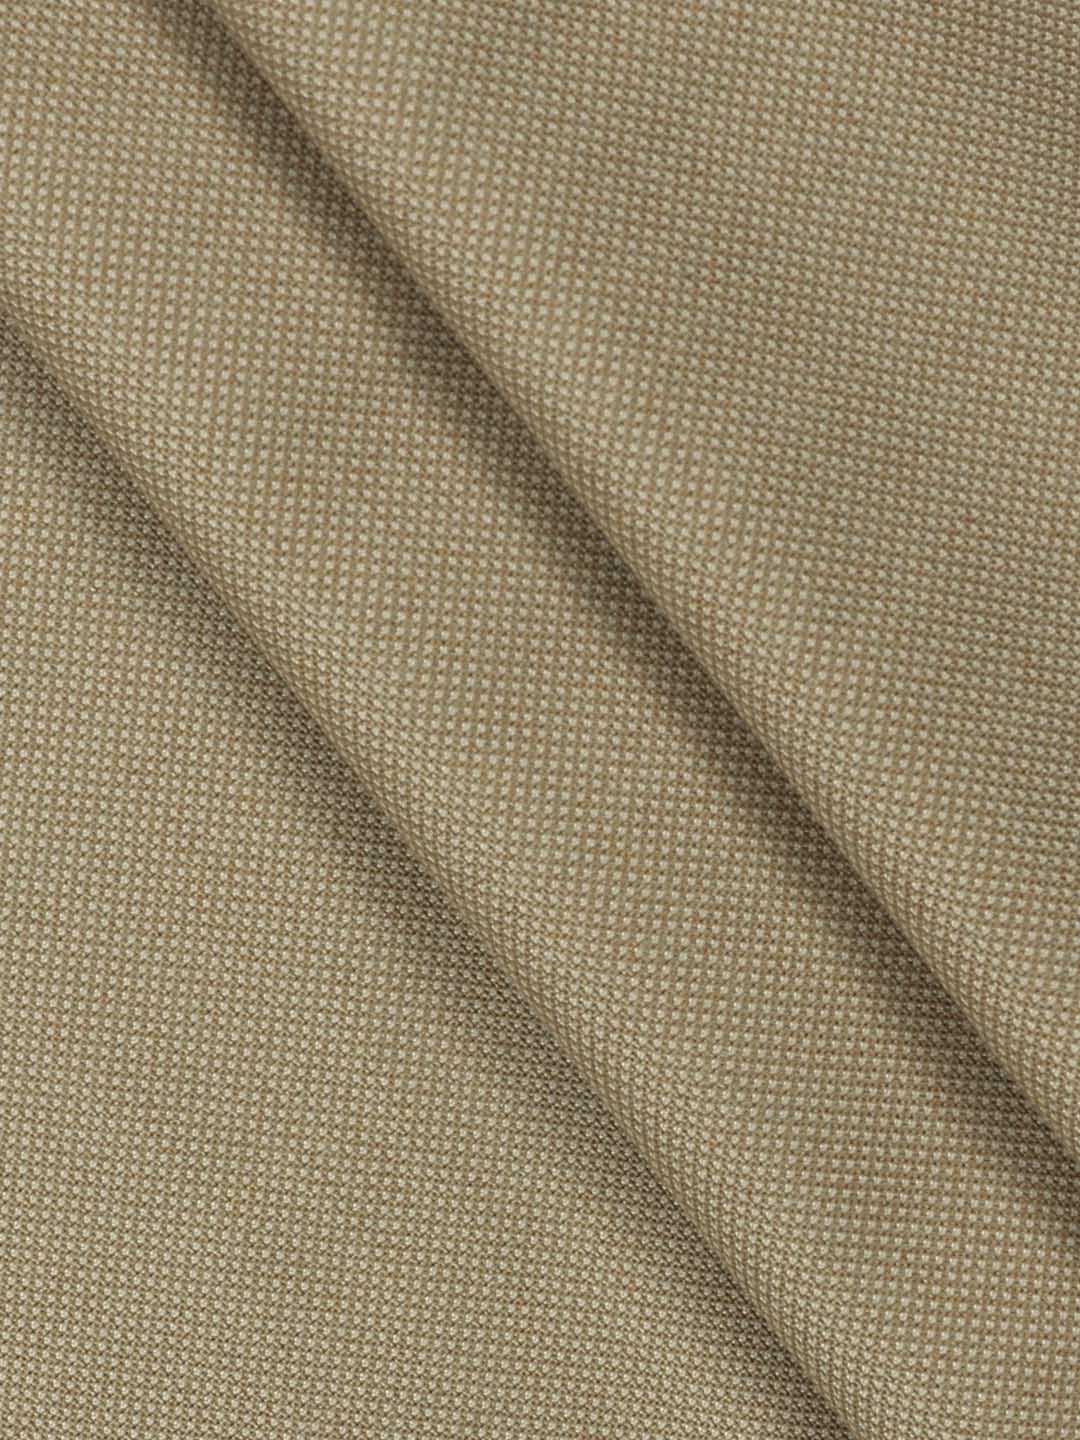 Cotton Premium Sandal Colour Suiting Fabric-Golden Days